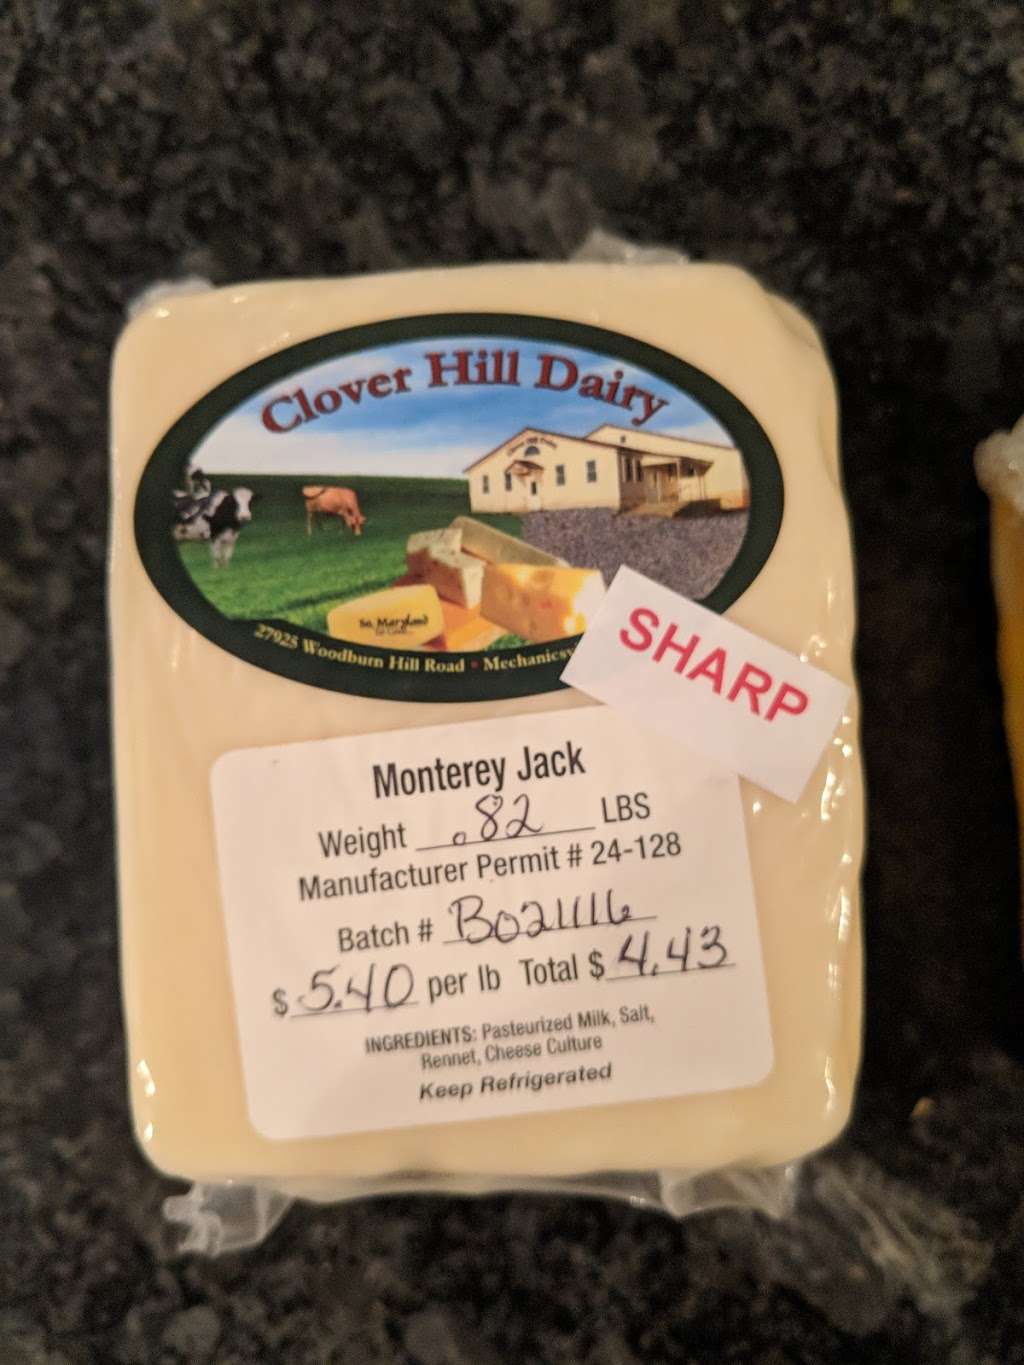 Clover Hill Dairy | 27925 Woodburn Hill Rd, Mechanicsville, MD 20659